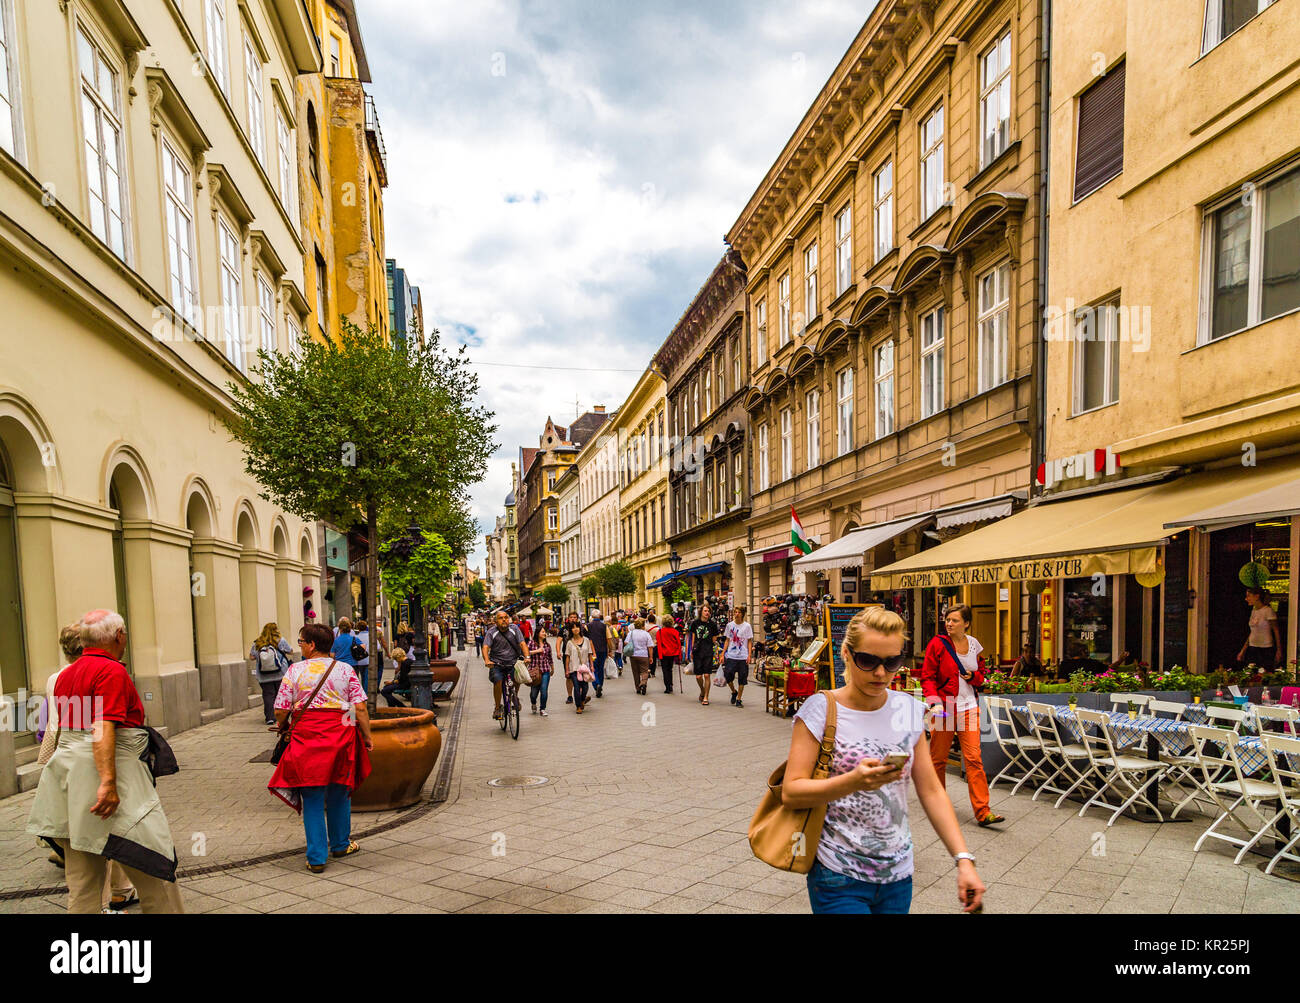 BUDAPEST, Ungarn - 16. SEPTEMBER 2014: Touristen, Einkaufen in der Vaci Utca und anderen beliebten Straßen des historischen Zentrums. Jedes Jahr wird die Anzahl der Stockfoto